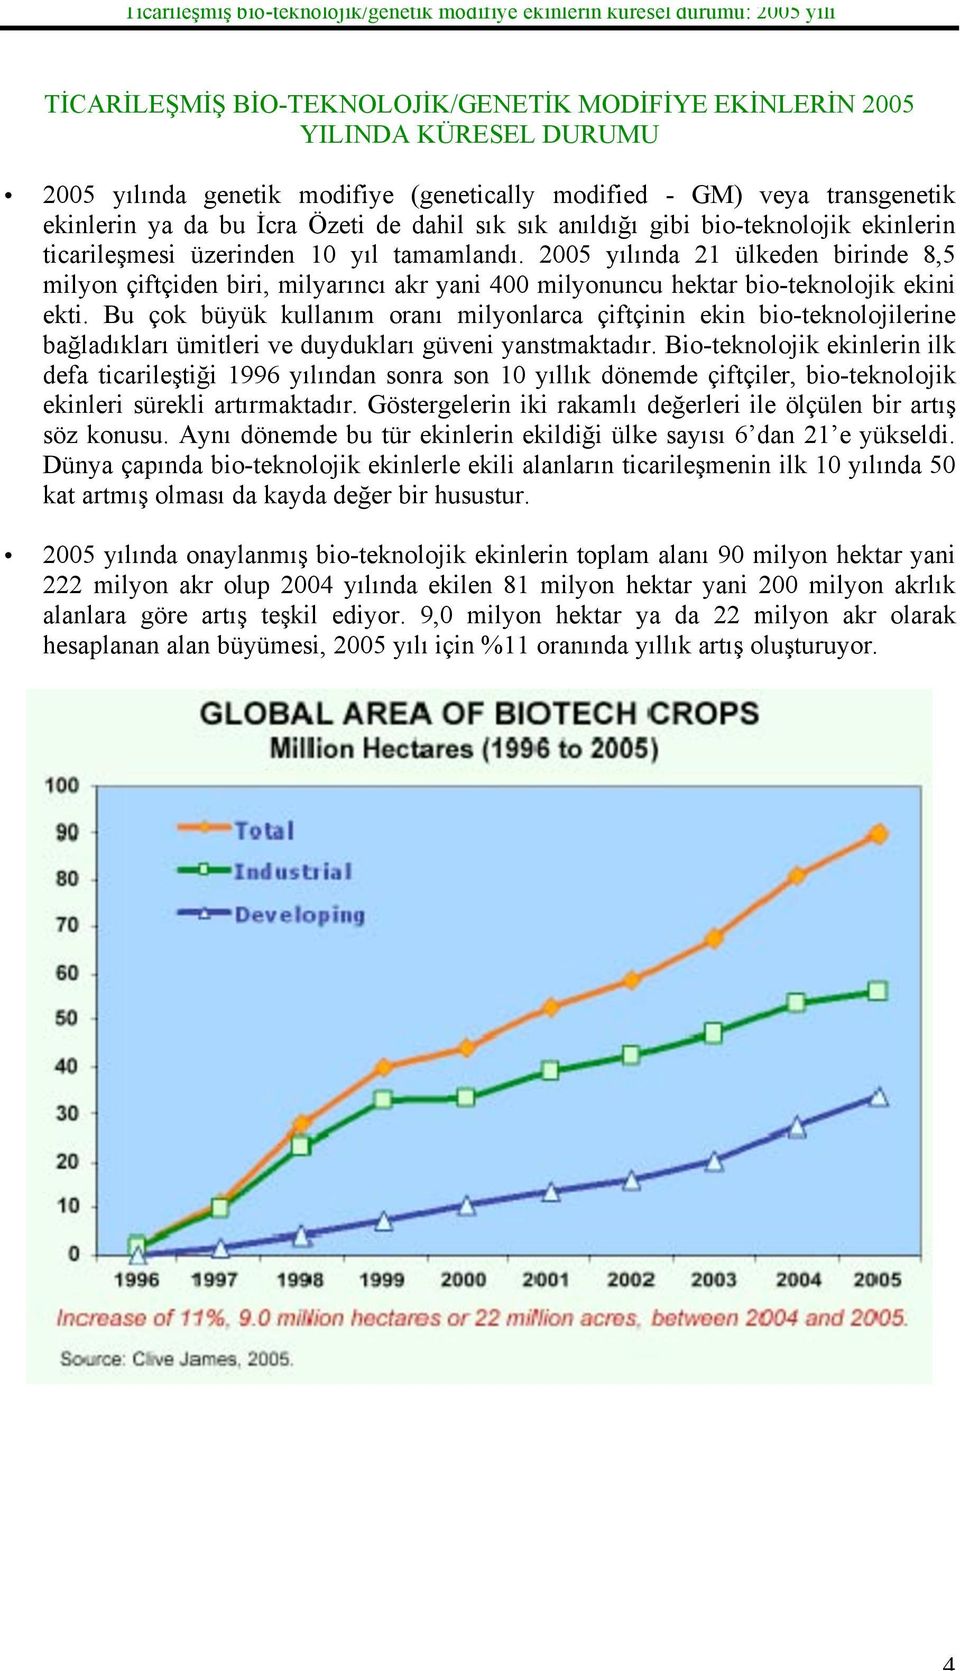 2005 yılında 21 ülkeden birinde 8,5 milyon çiftçiden biri, milyarıncı akr yani 400 milyonuncu hektar bio-teknolojik ekini ekti.